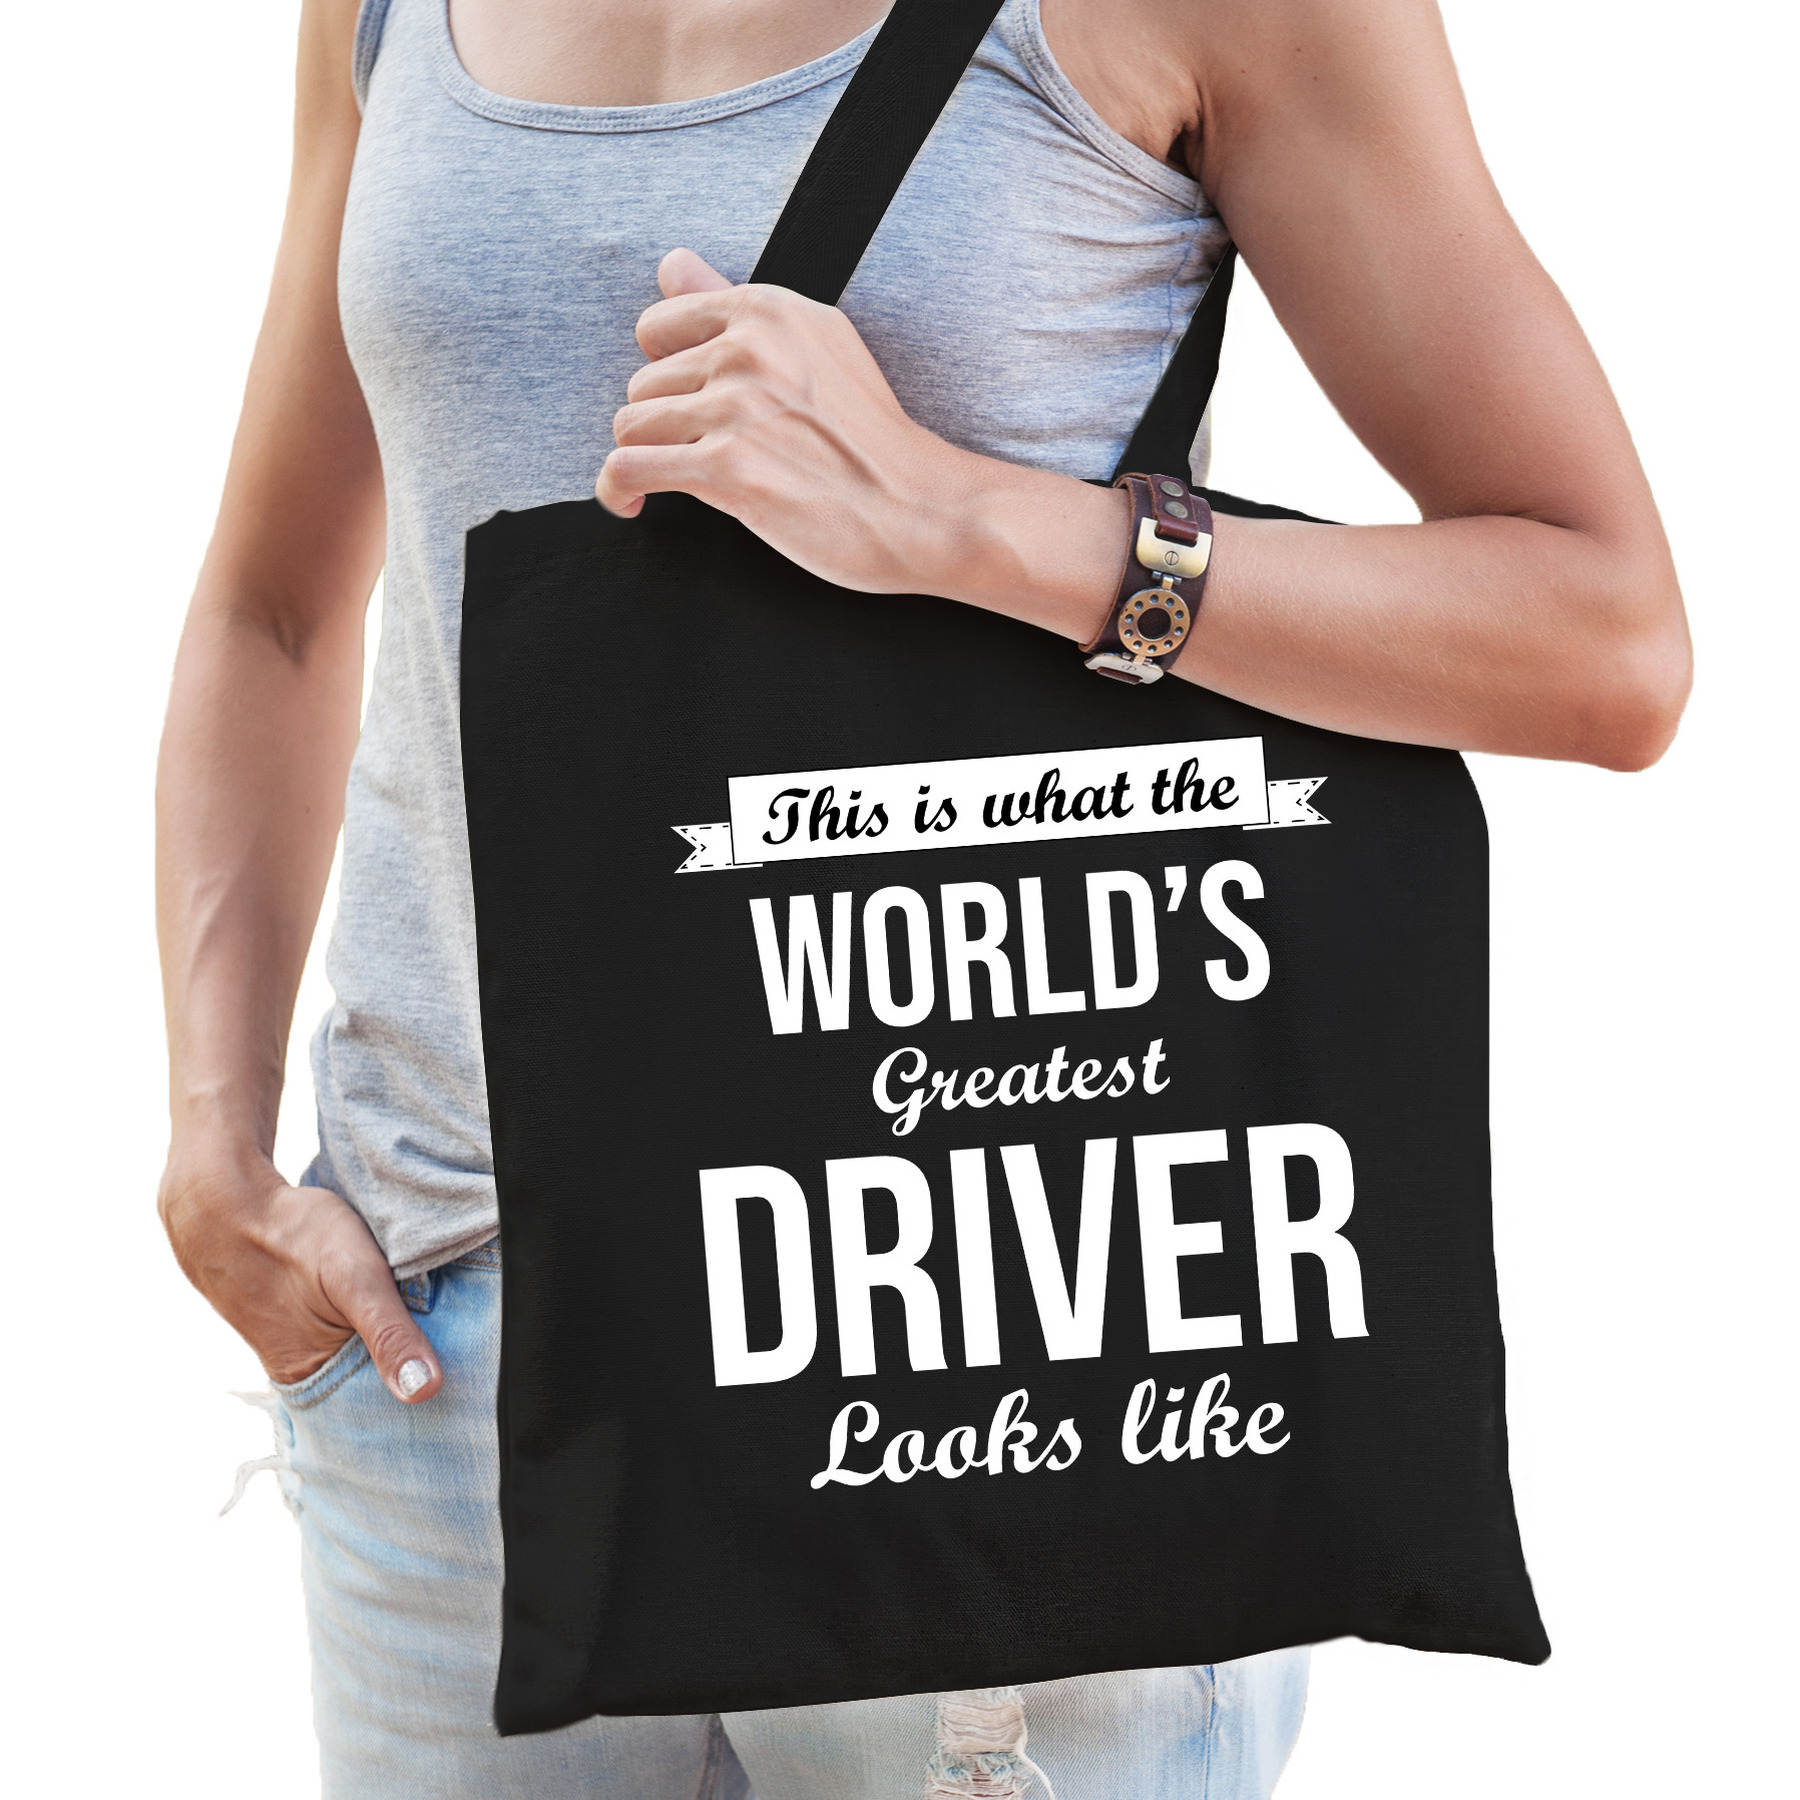 Worlds greatest driver tas zwart volwassenen - werelds beste chauffeur cadeau tas